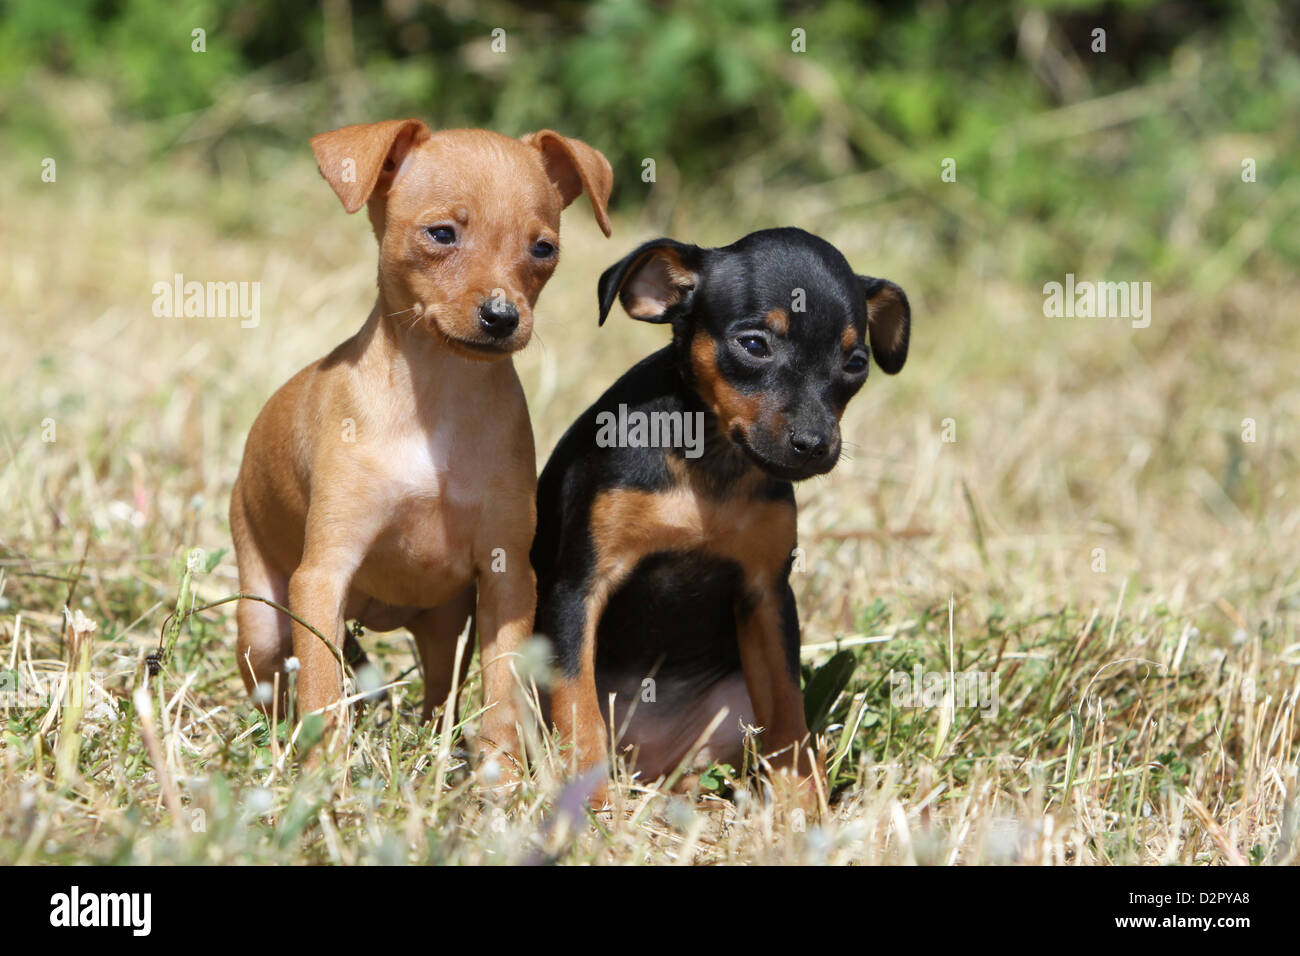 Dog Prazsky krysarik / Prague Ratter / Ratier de Prague two puppies  different colors in a meadow Stock Photo - Alamy